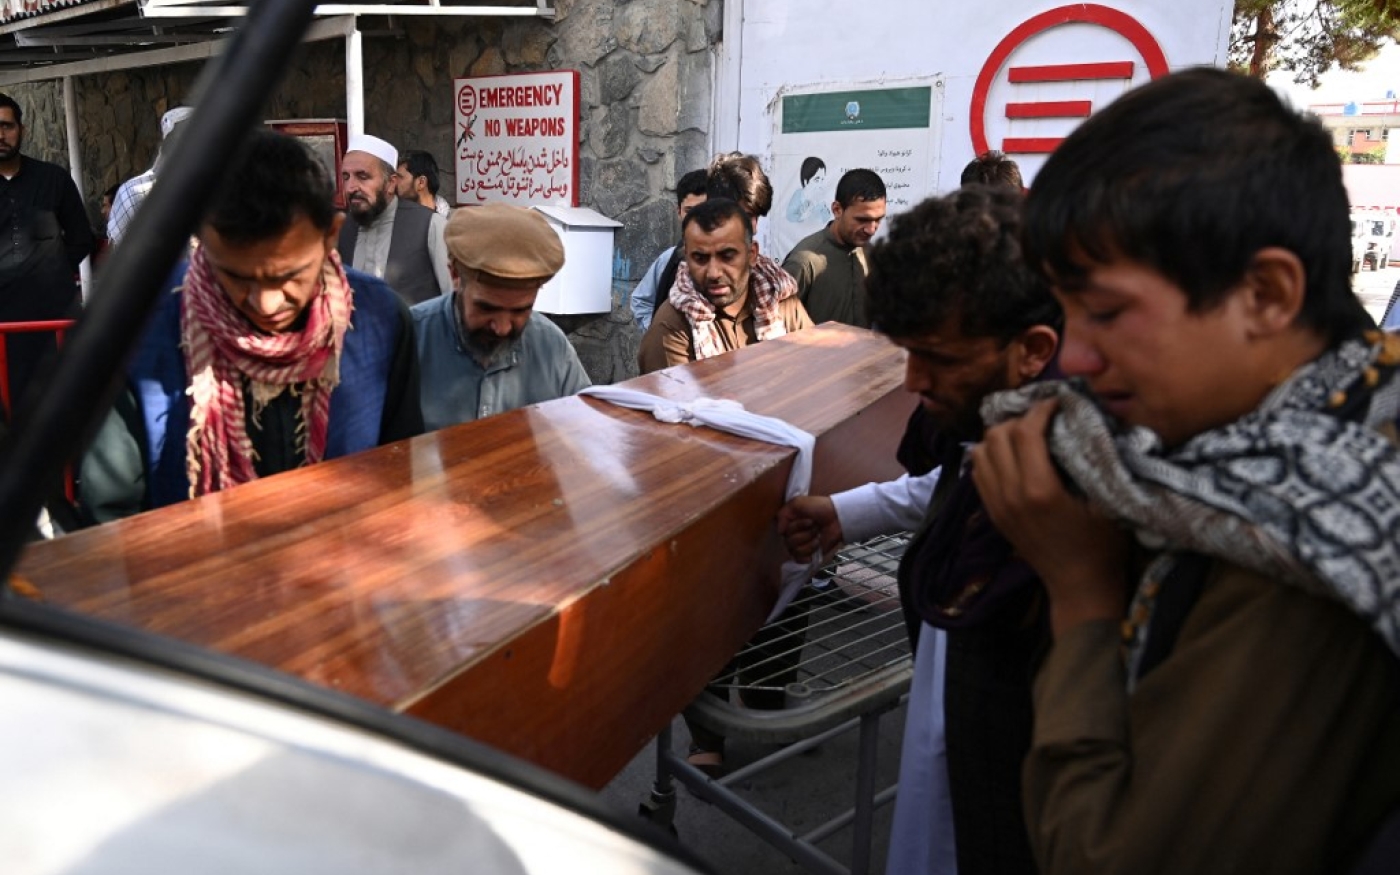 Des Afghans chargent dans une voiture le cercueil d’une victime de l’attentat du 26 août, qui a tué des dizaines de personnes, dont 13 soldats américains, à Kaboul (AFP/Amir Qureshi)